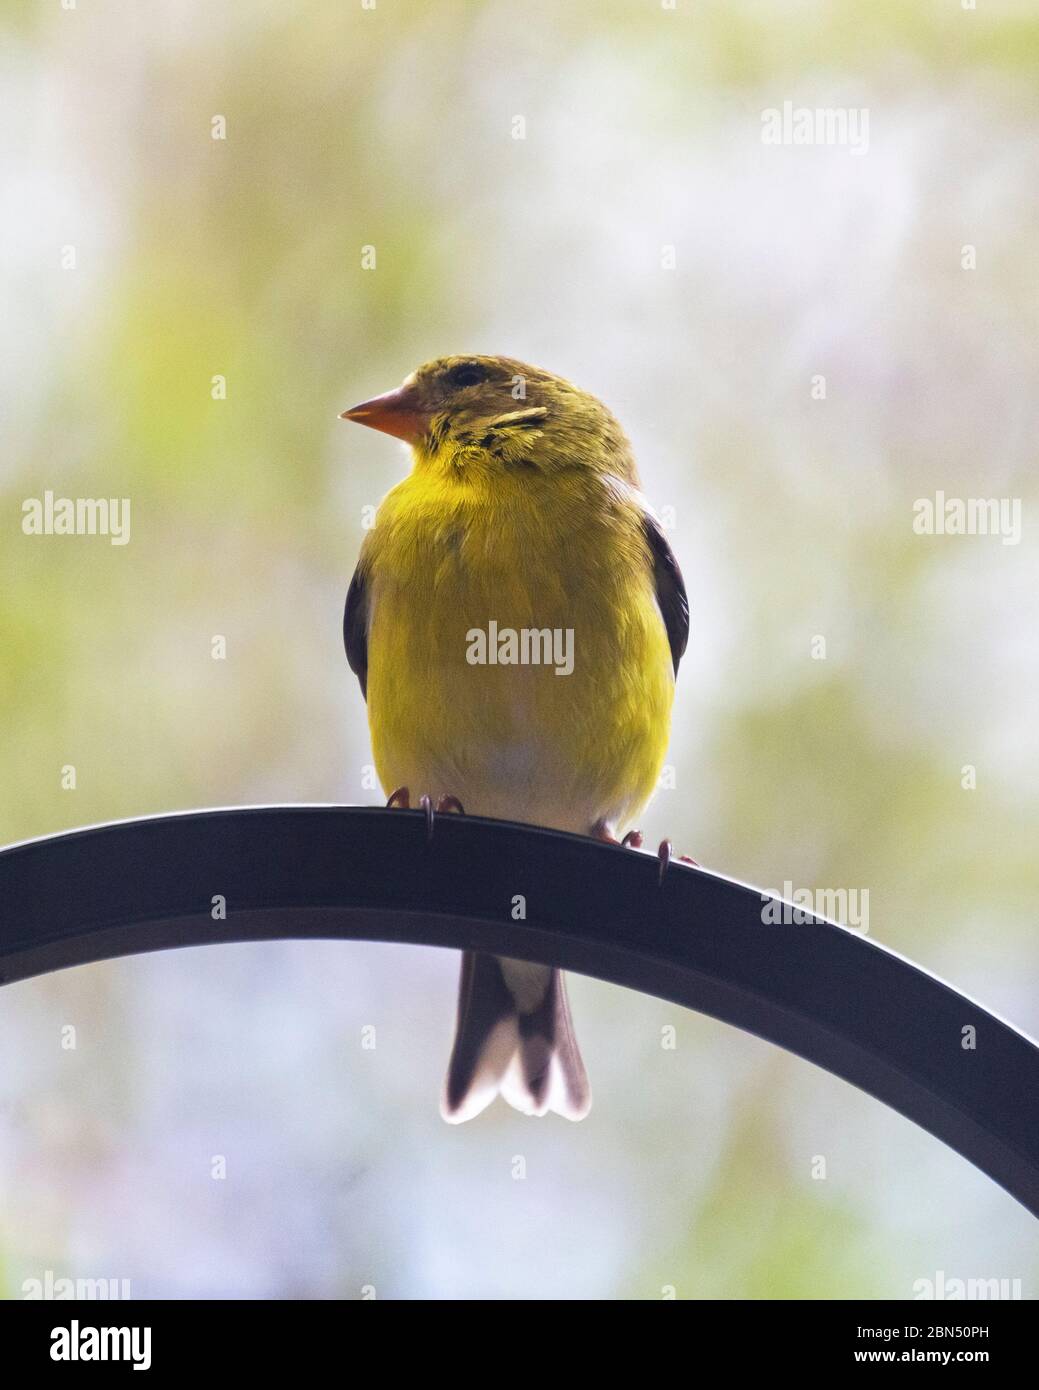 Eine Nahaufnahme eines männlichen Goldfinken, der auf einem Metallhaken sitzt. Hintergrund verschwommen. Stockfoto